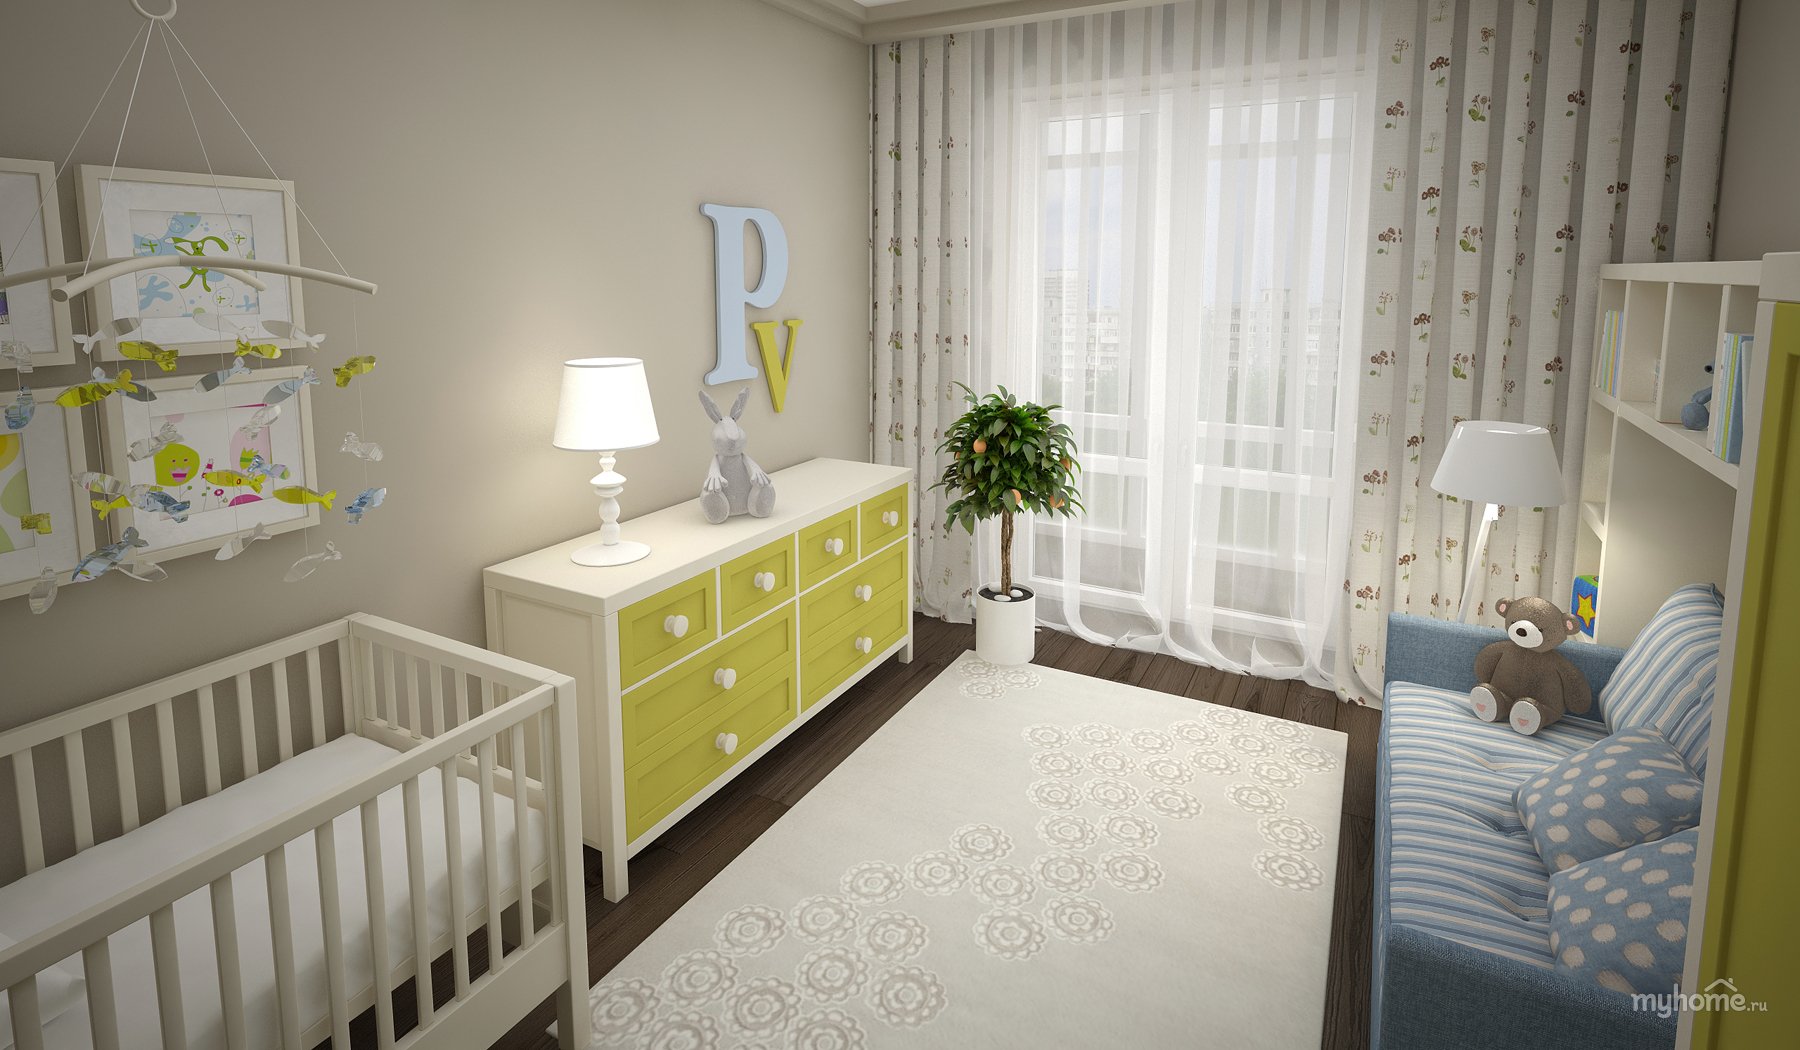 Комната для новорожденного — важные советы, 160 фото идеального дизайна